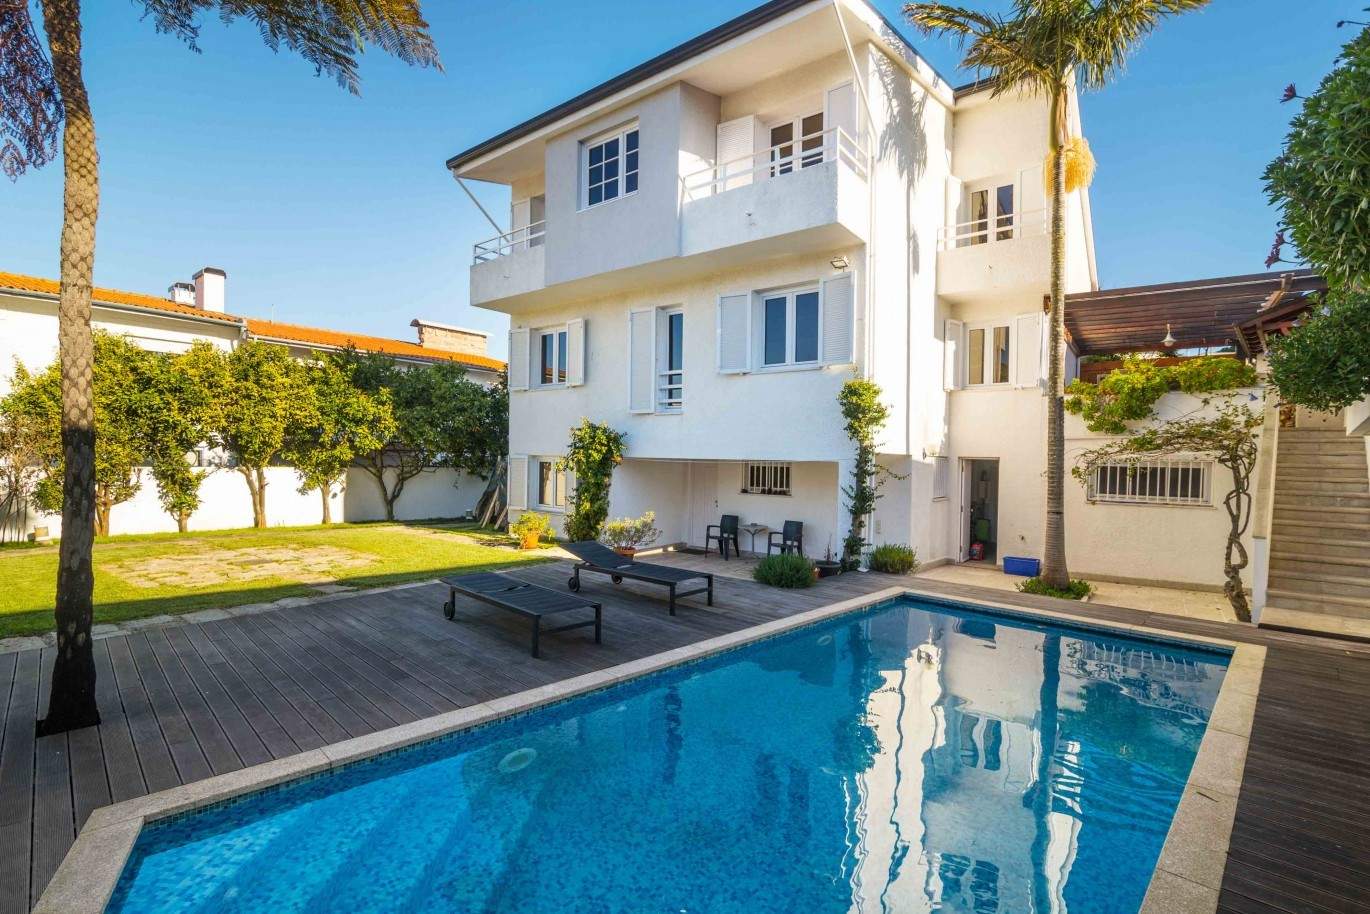 Villa for sale with pool, Senhora da Hora, Porto, Portugal_94455